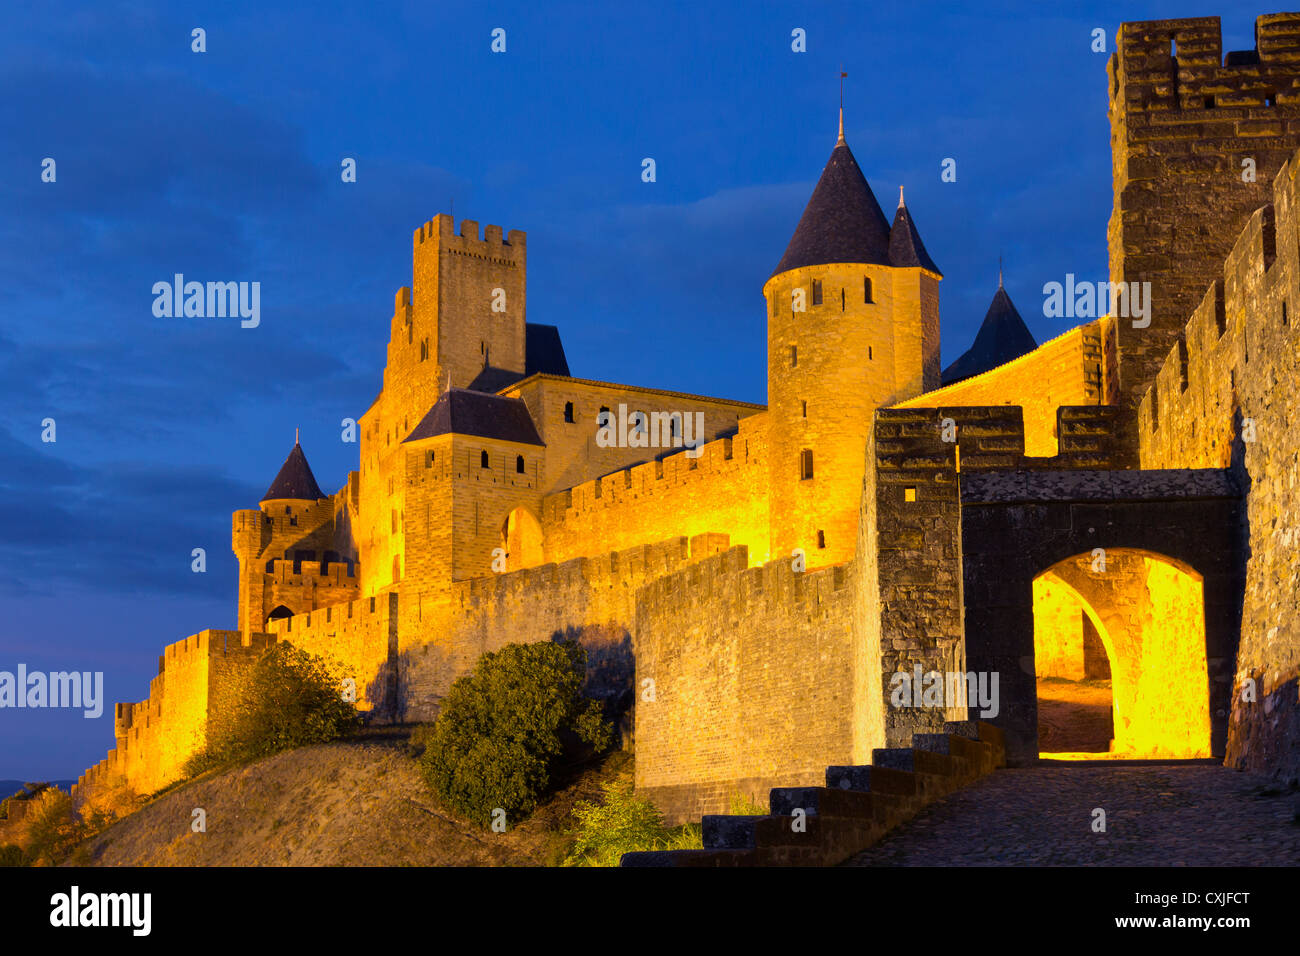 La ville médiévale de Carcassonne, La Cité, éclairé, Aud, Roussillon, Languedoc, France Banque D'Images